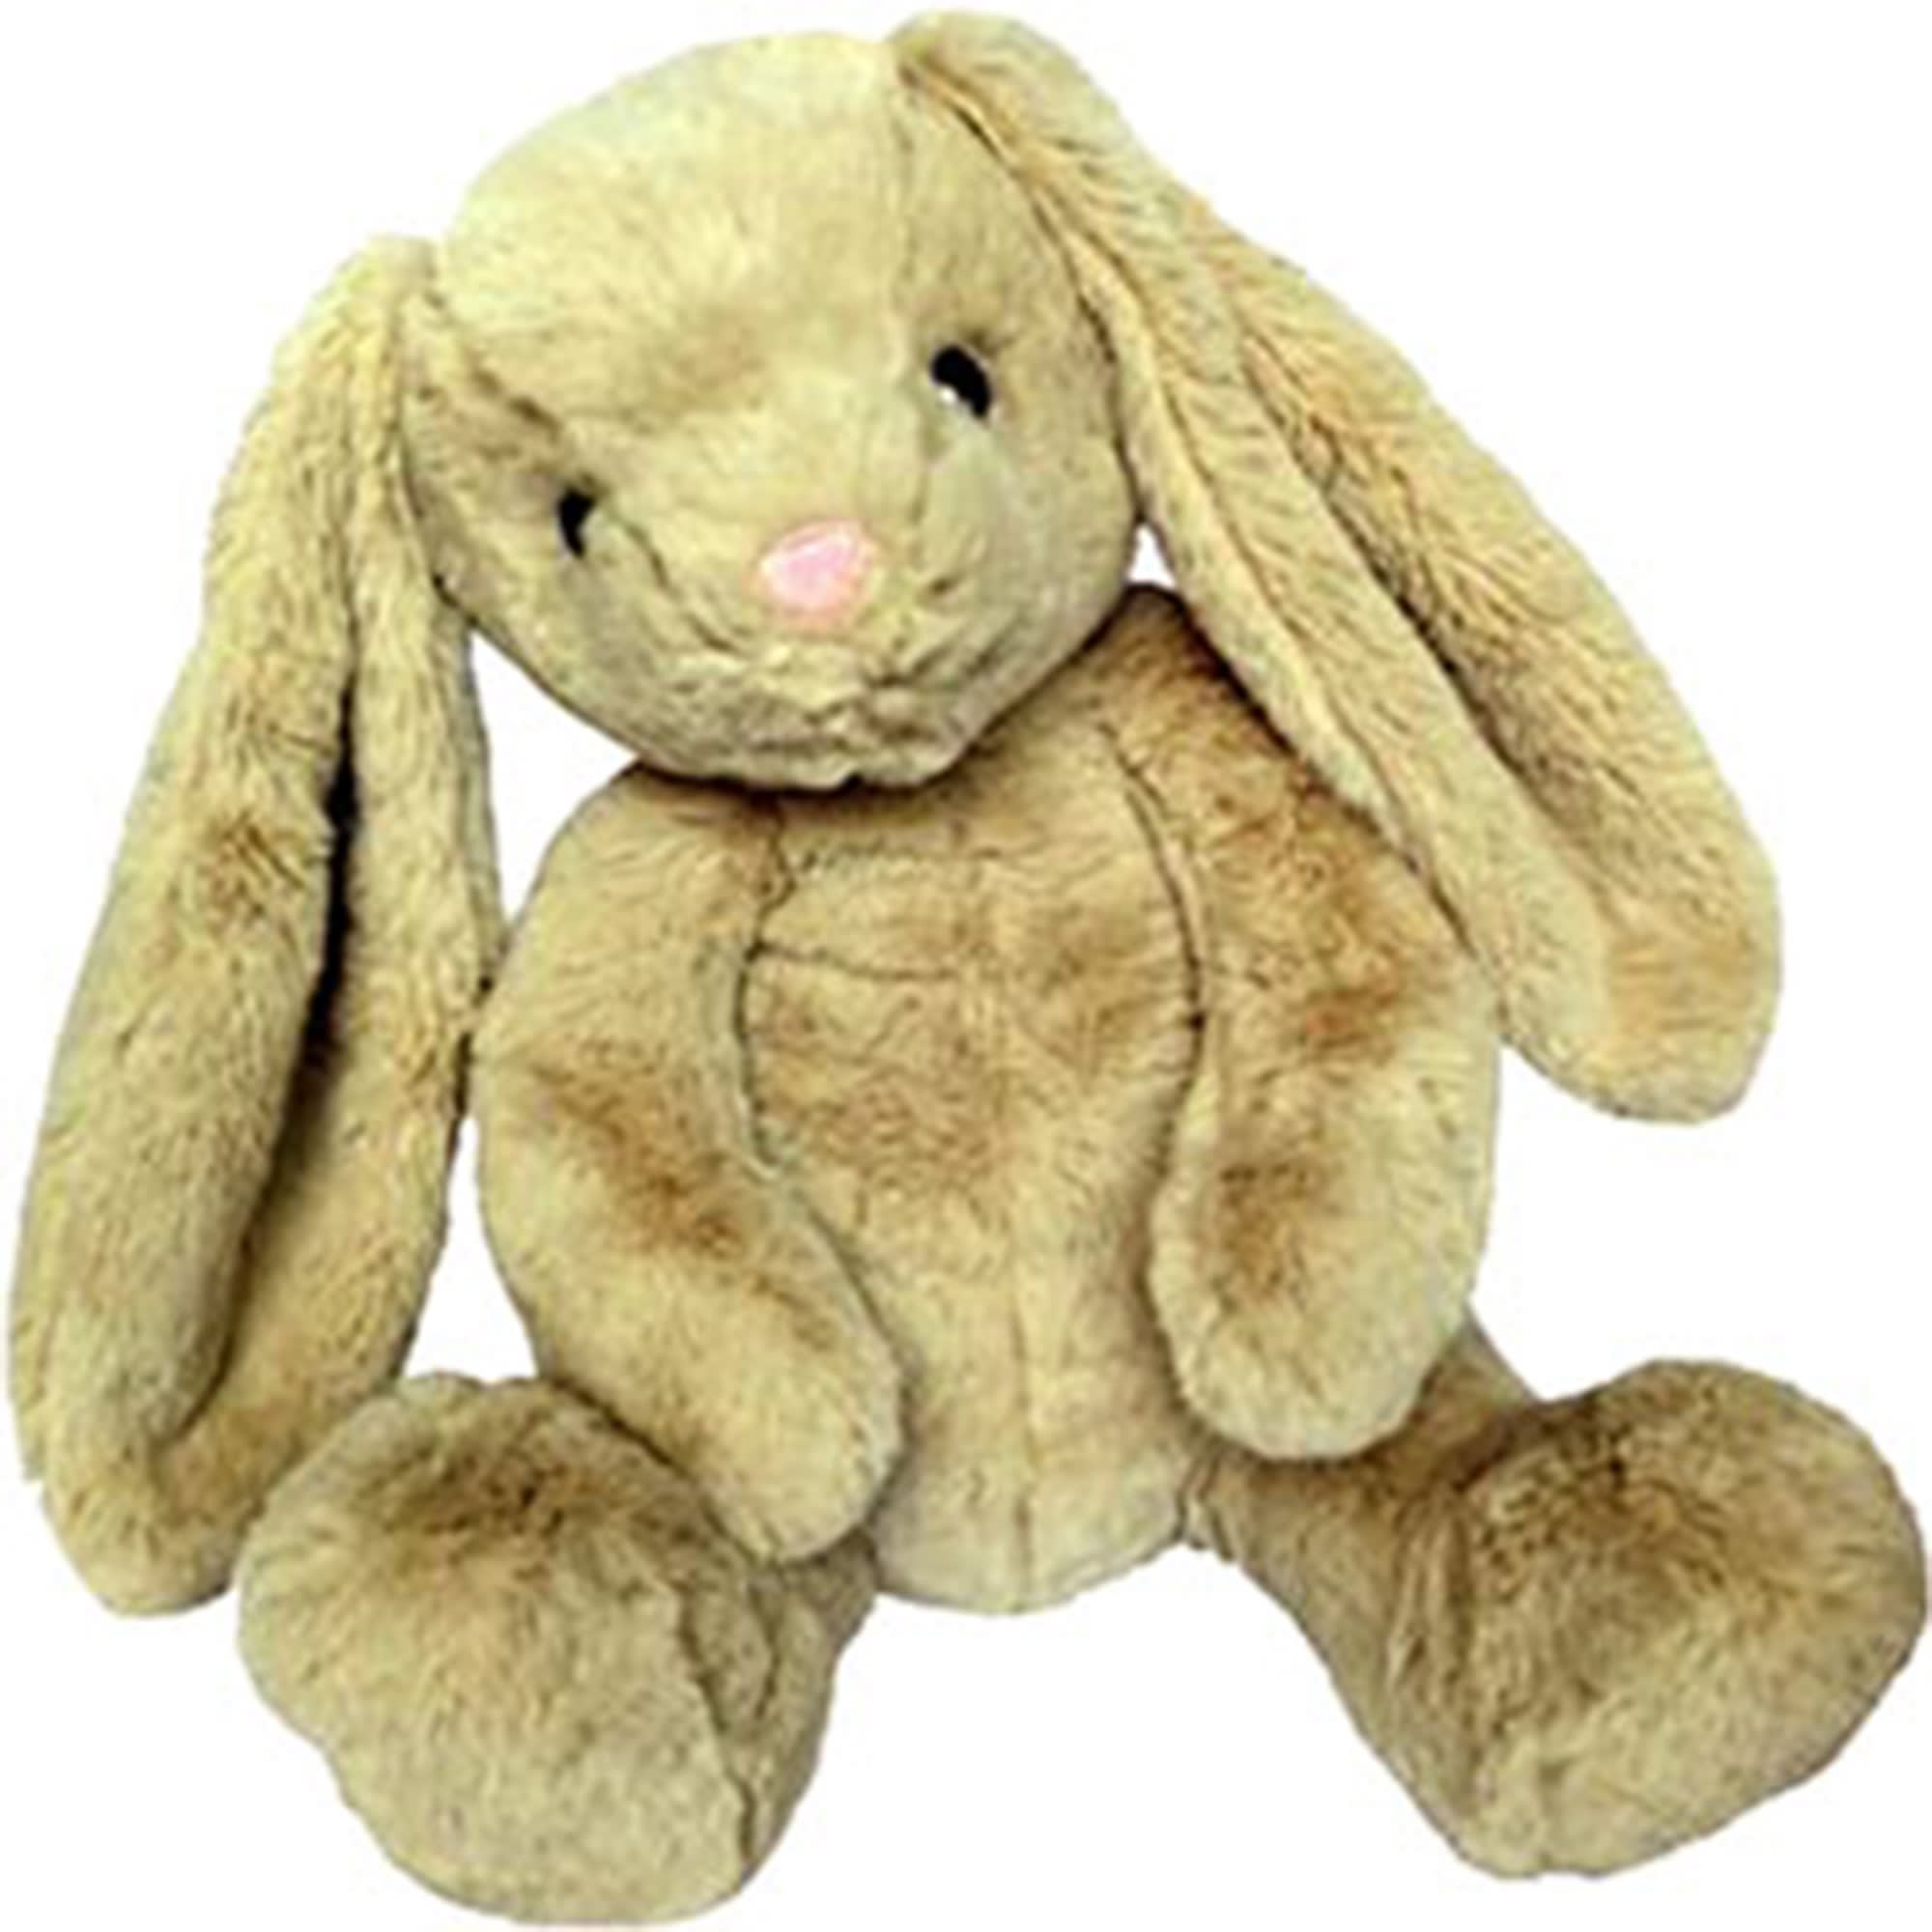 cuddly rabbit soft toy